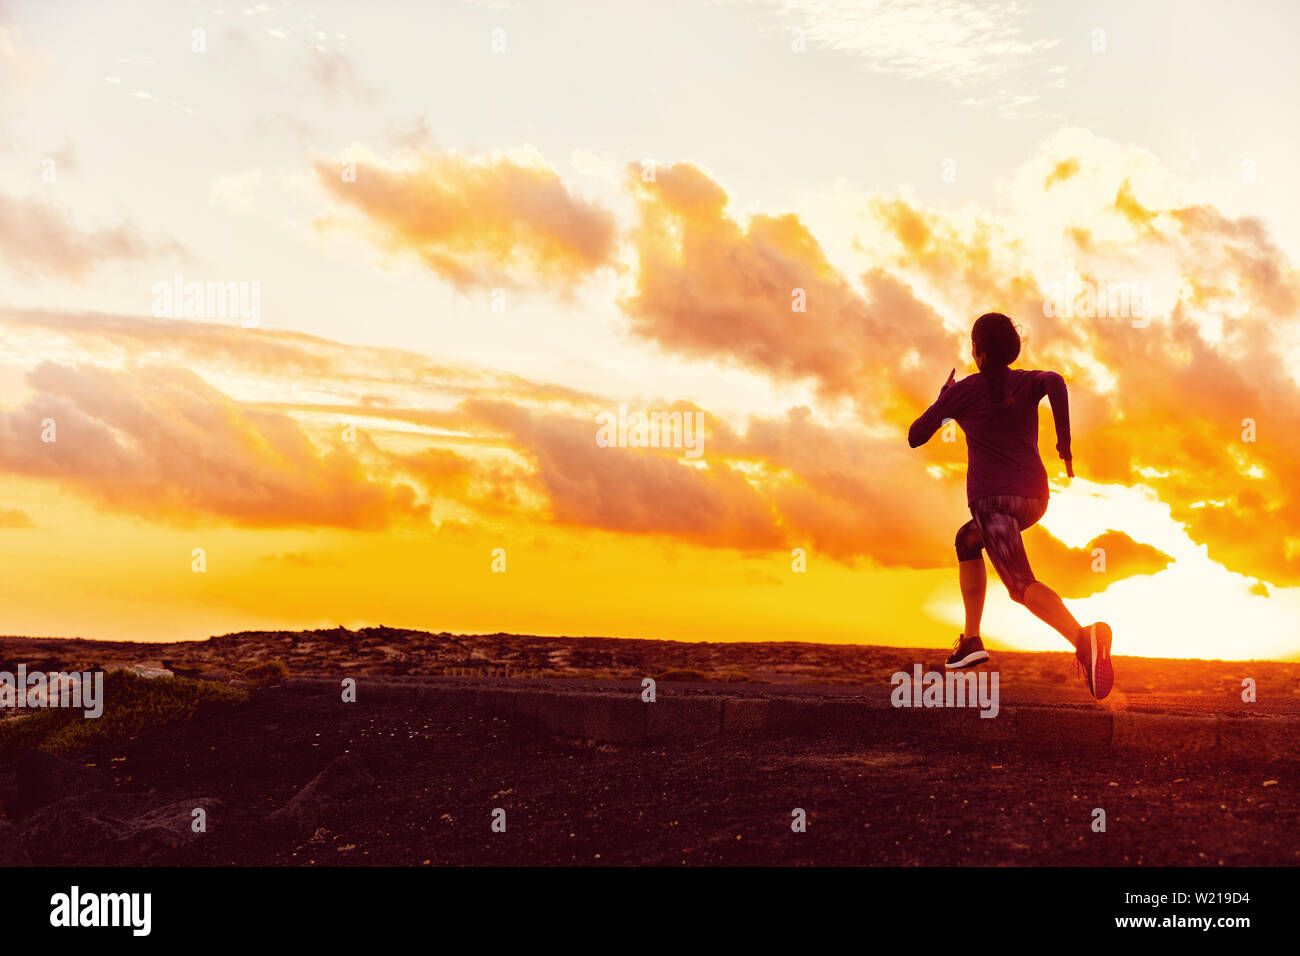 Sportler Trail Running Silhouette einer Frau runner bei Sonnenuntergang Sonnenaufgang. Cardio-fitness-Training für Marathon Rennen. Aktiv gesund Lifestyle im Sommer Natur. Zielerreichung Herausforderung Konzept. Stockfoto